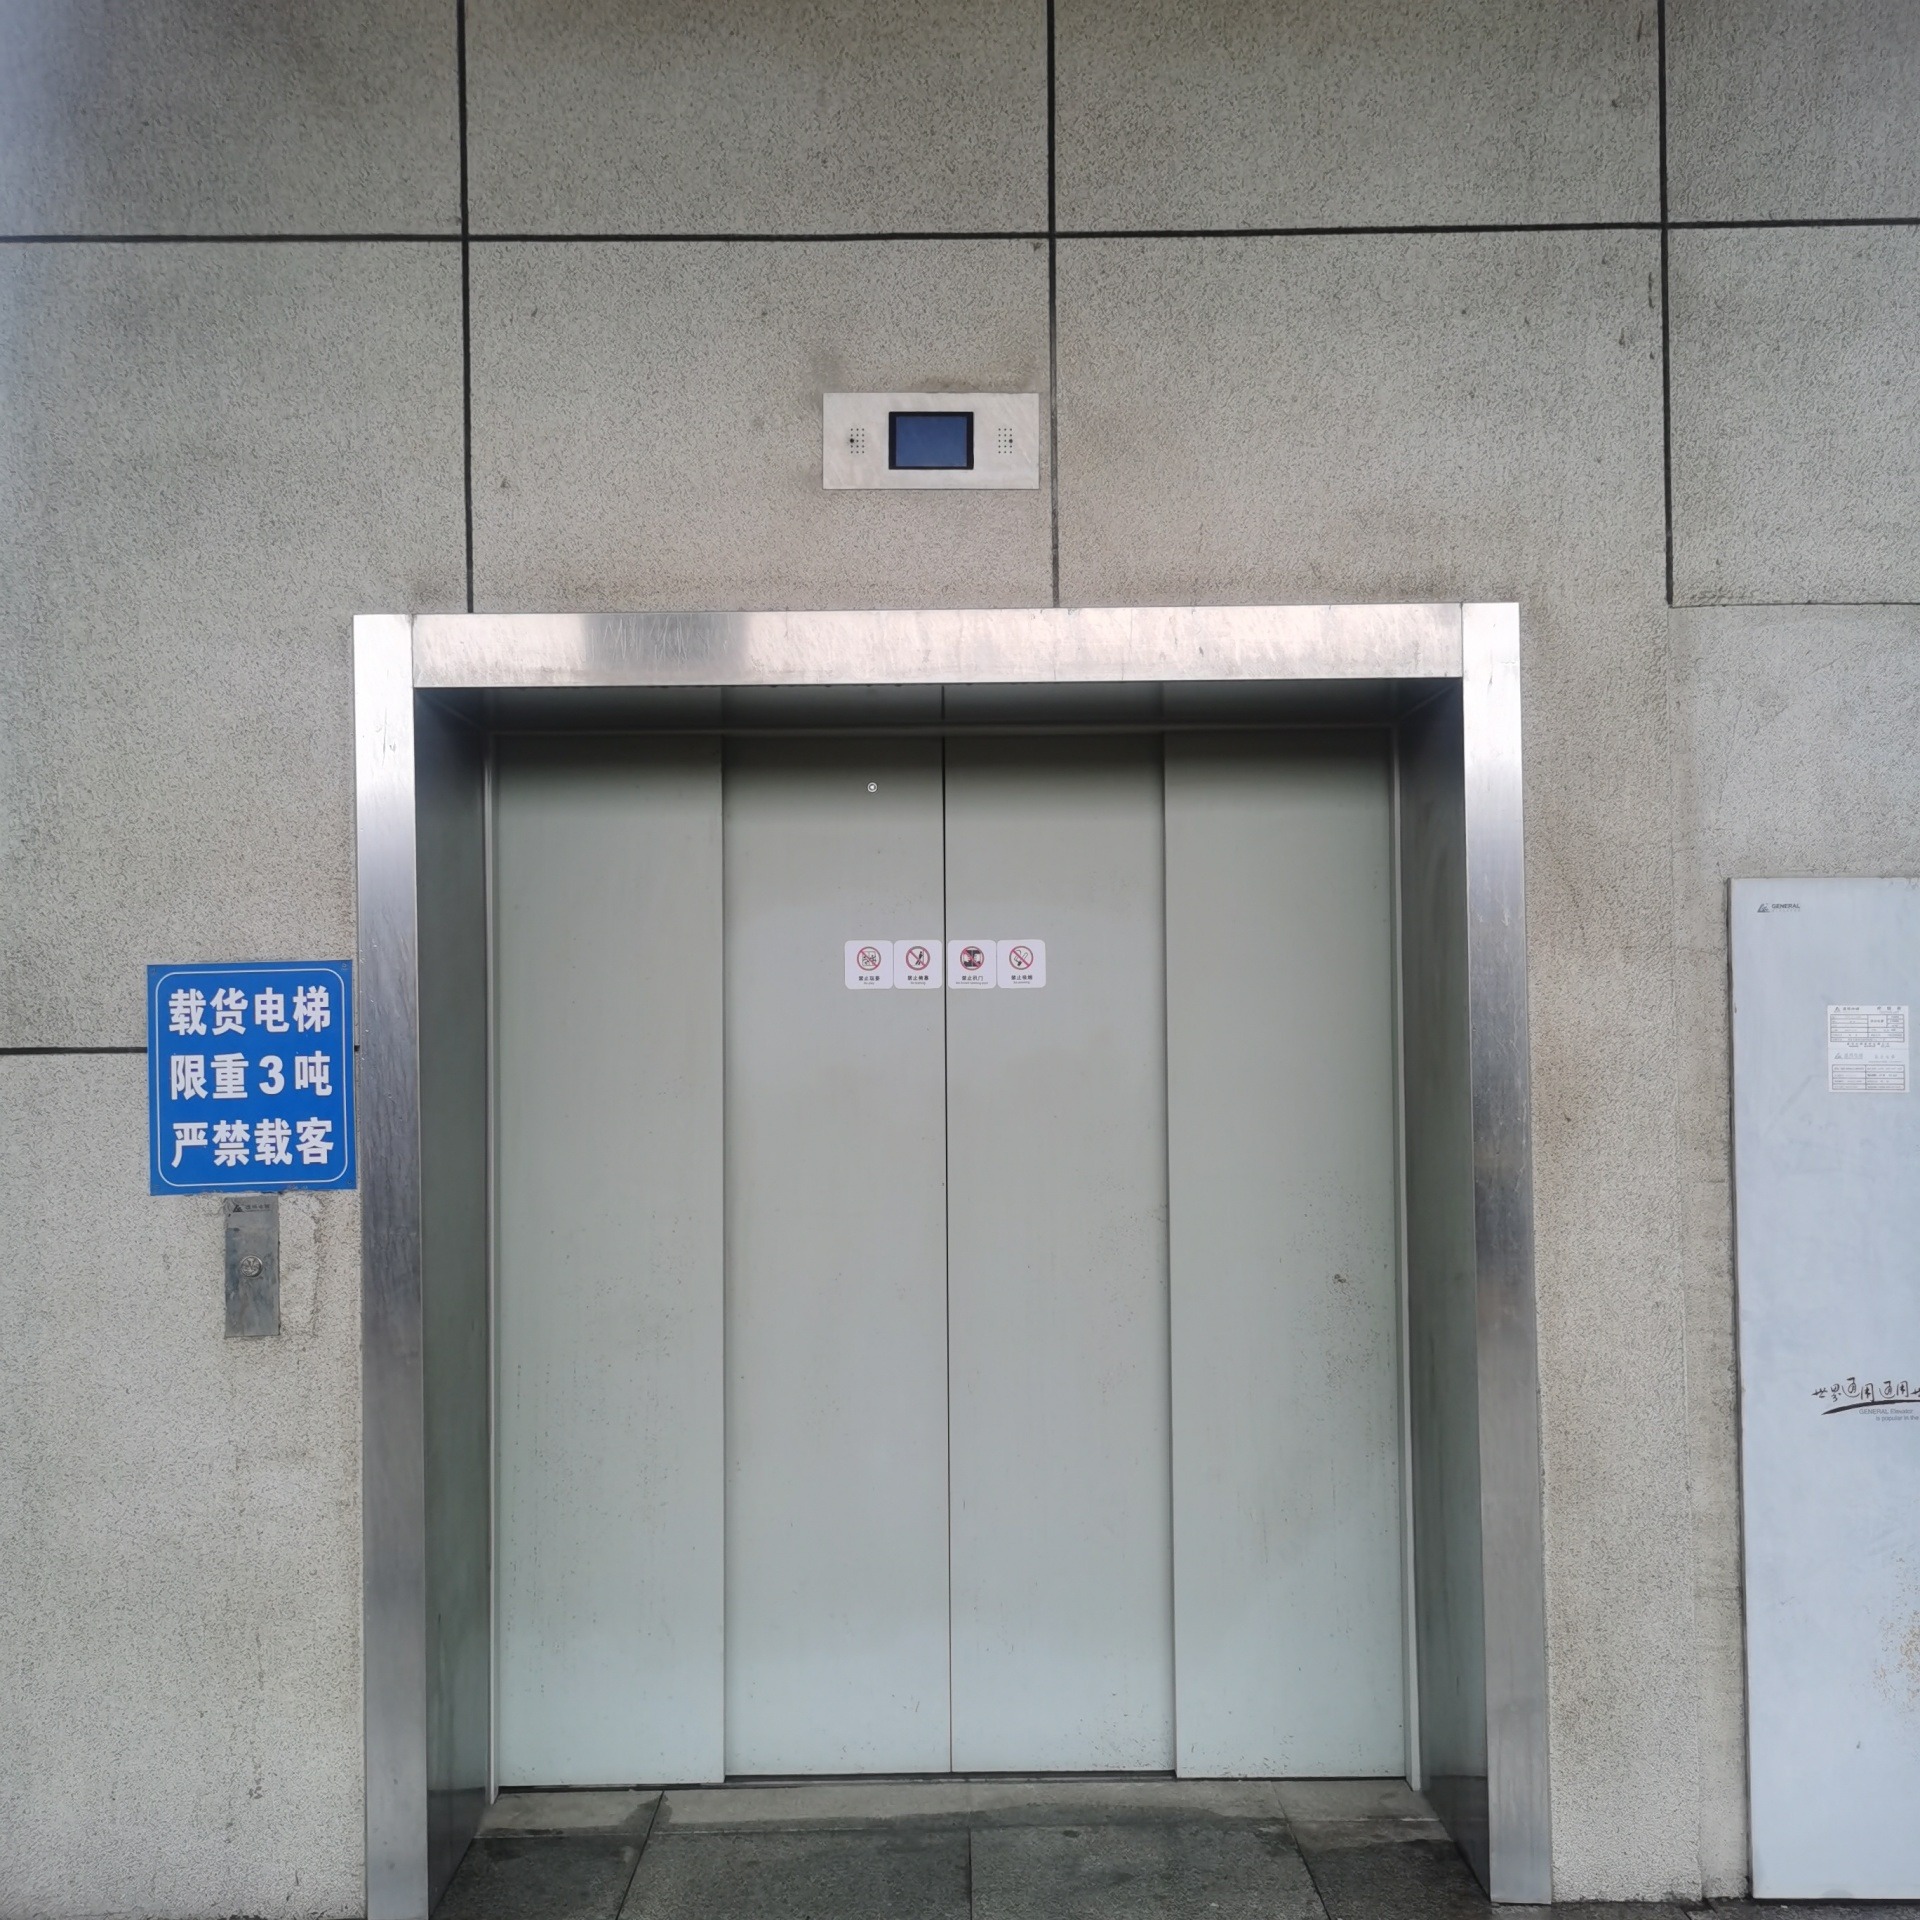 三洋电梯 货梯 乘客电梯 病床电梯 观光梯 别墅电梯（家用电梯） 扶梯 加装电梯图片